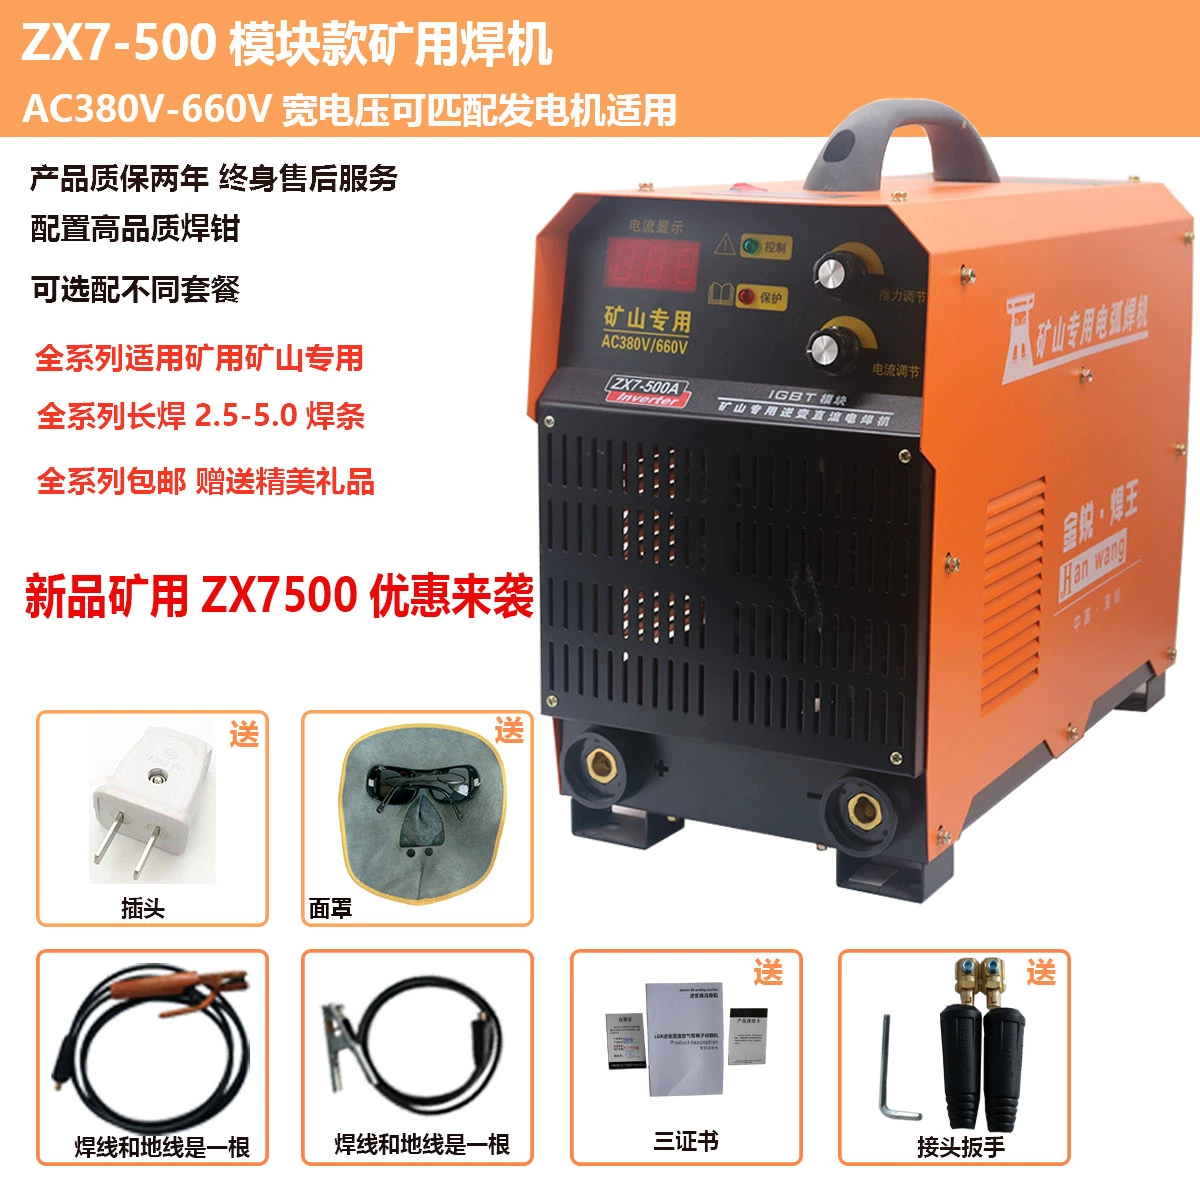 máy hàn cell pin cân lực Máy hàn khai thác mỏ ZX7-500 máy công nghiệp khai thác công nghiệp công suất cao đặc biệt và khai thác mỏ hàn tay hàn 380V 660V giá máy hàn laser 1000w tq936 Máy hàn thủ công